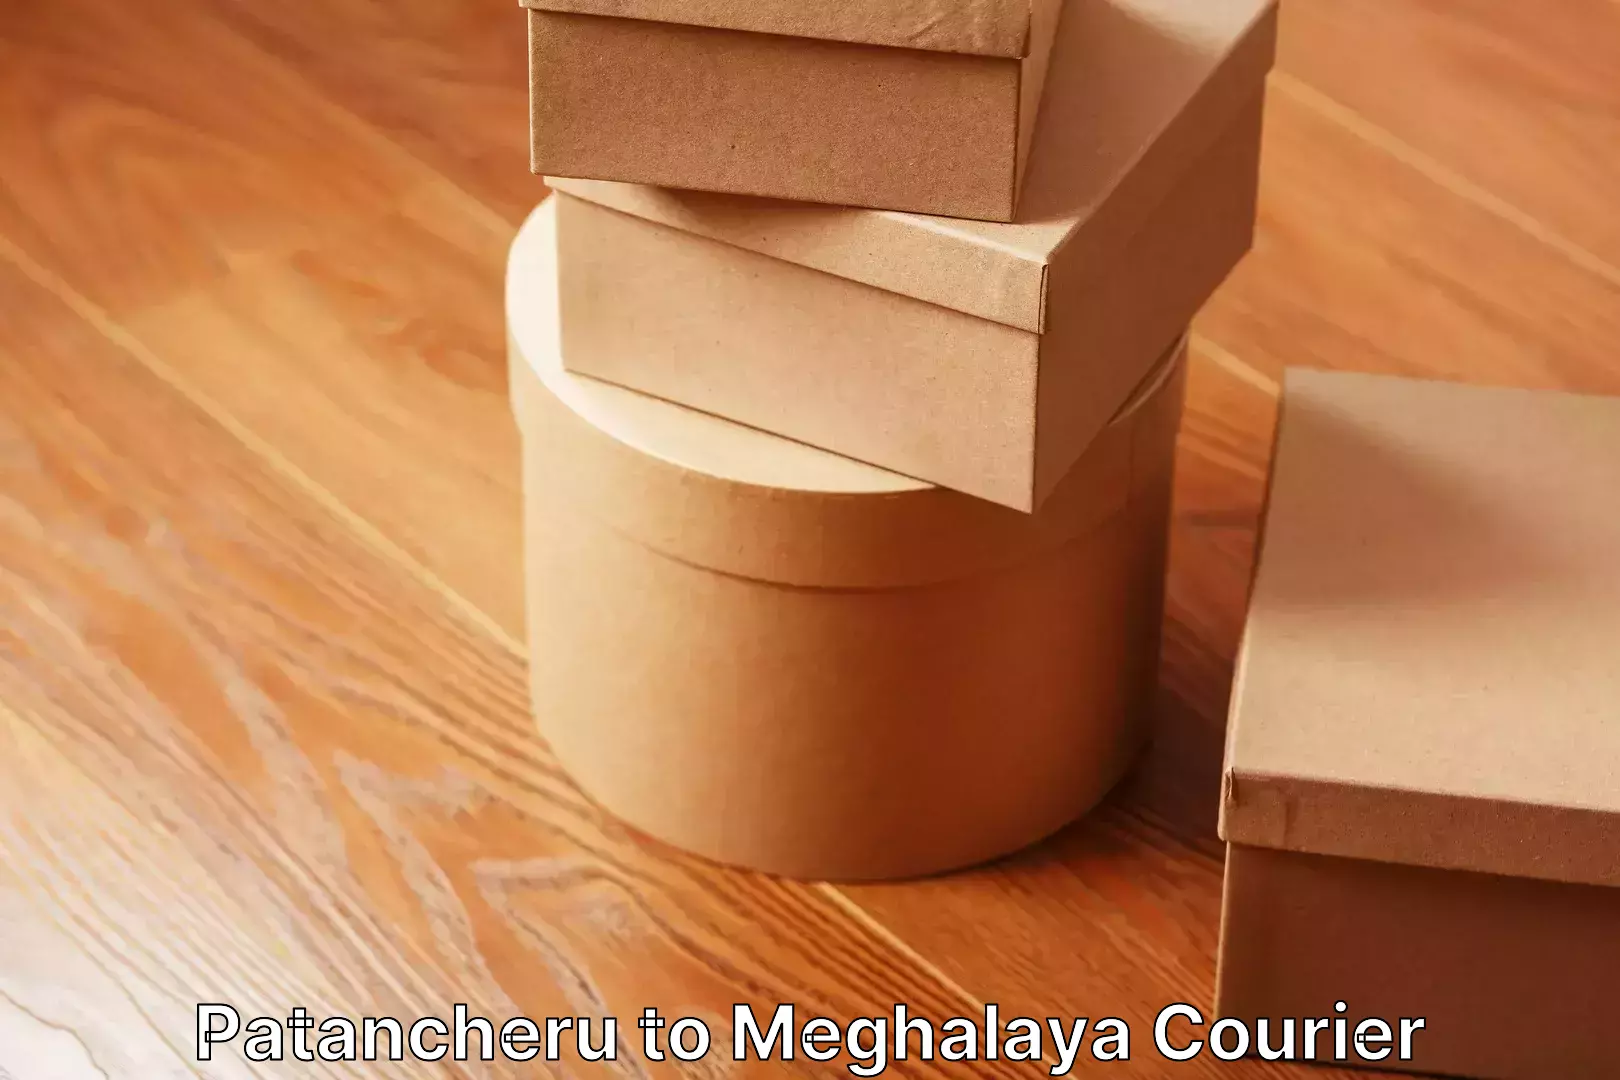 Efficient household moving Patancheru to Meghalaya